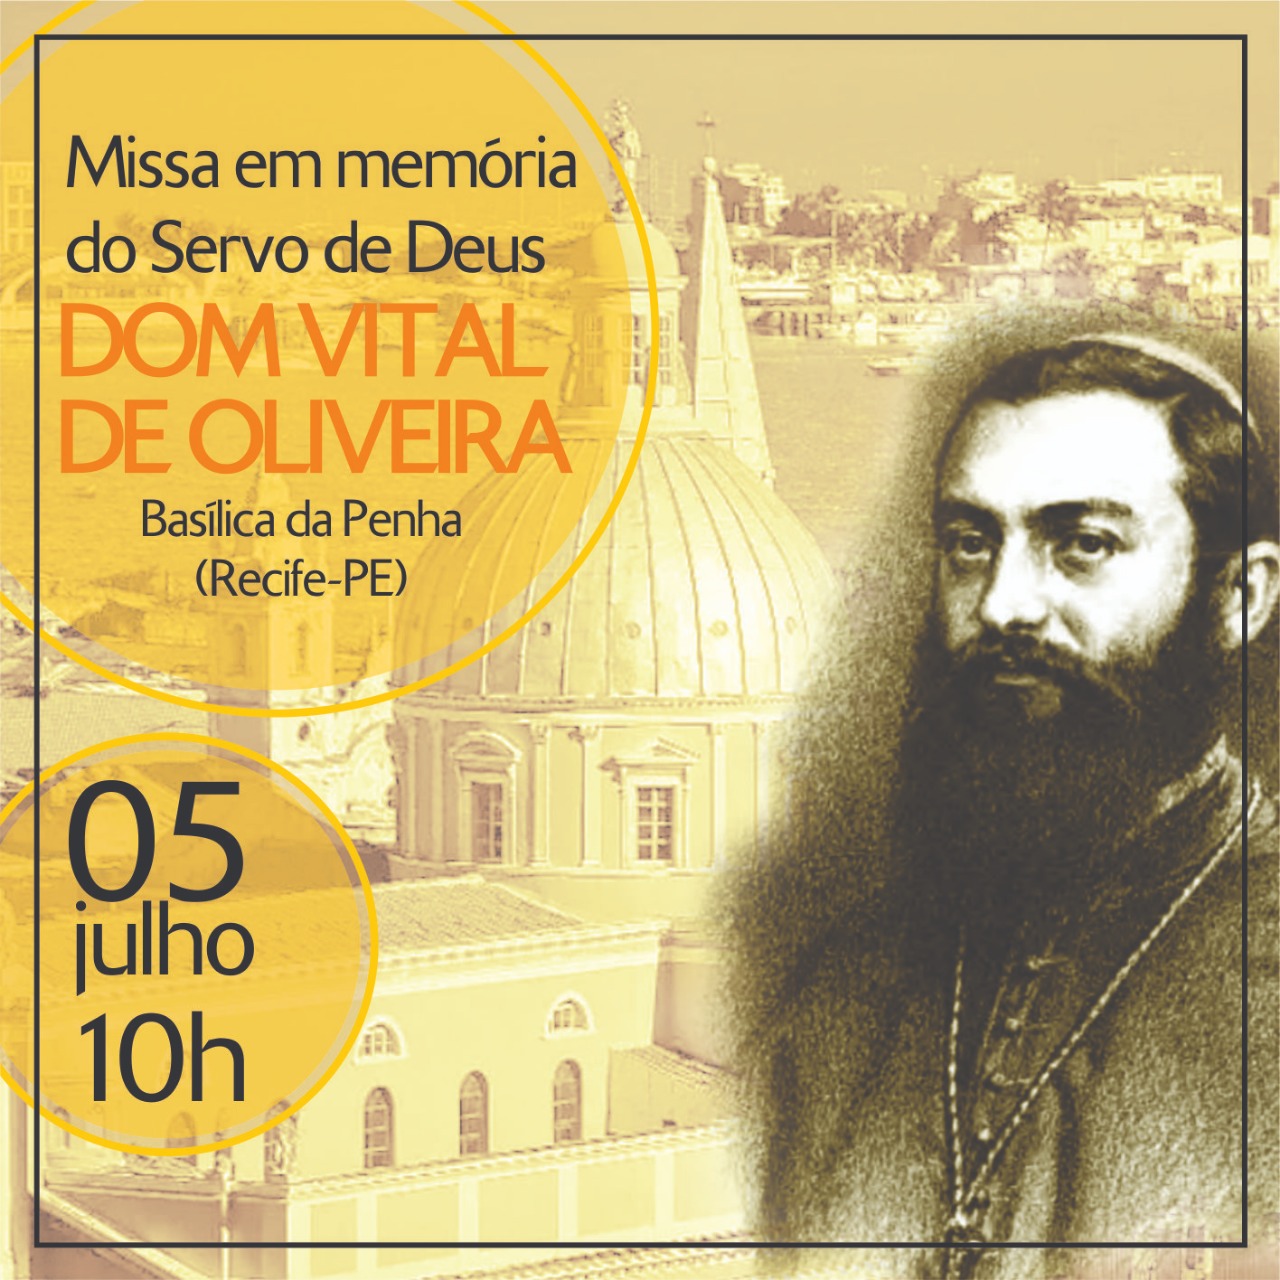 Missa em memória a Dom Vital de Oliveira (05/07)